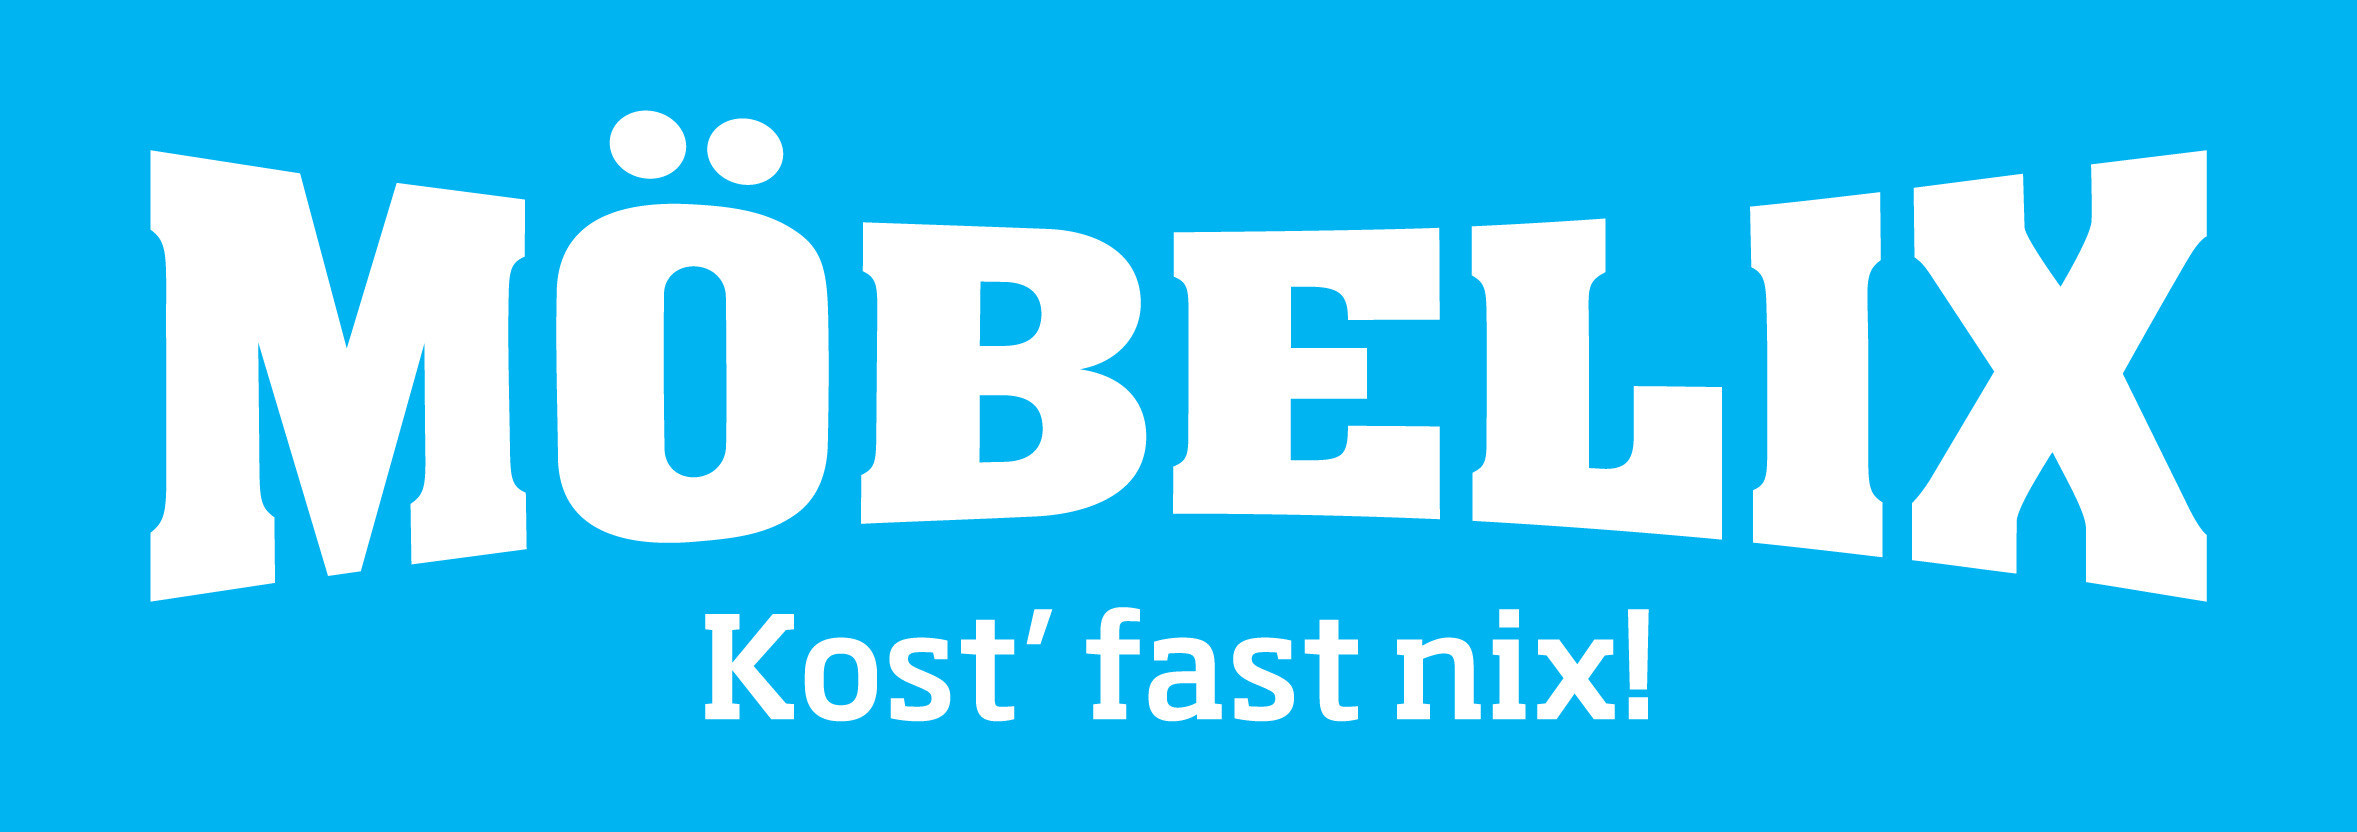 Möbelix GmbH, Kost' fast nix!